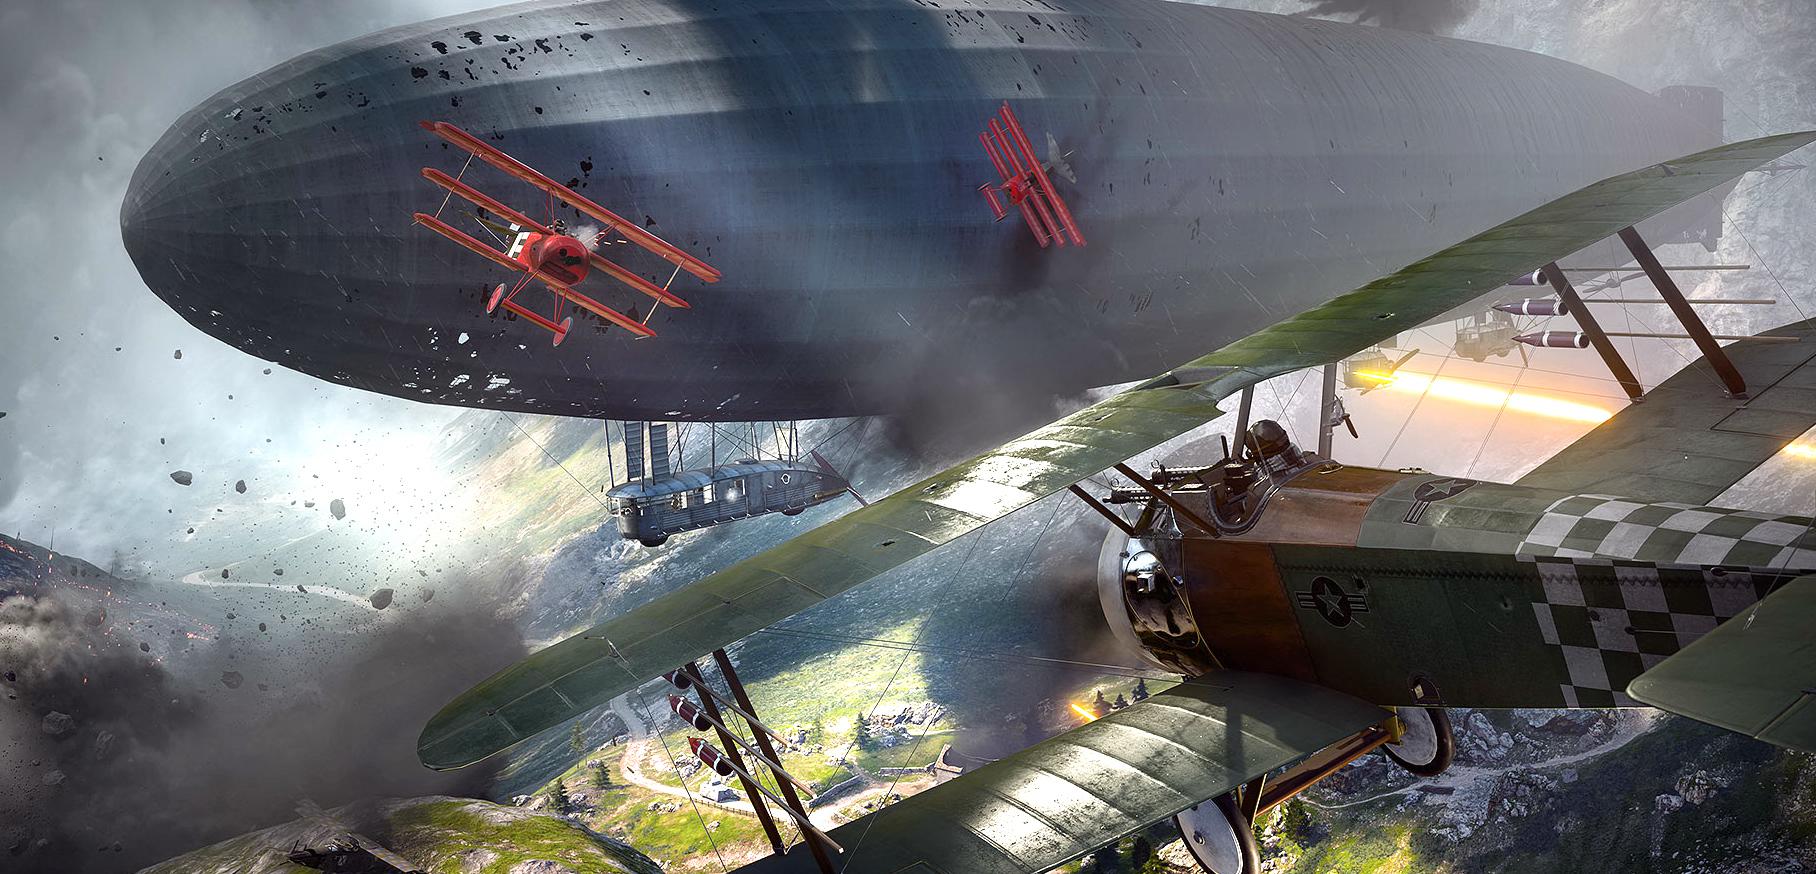 Battlefield 1: intensywne walki samolotów i czołgów - zobaczcie skalę zniszczeń